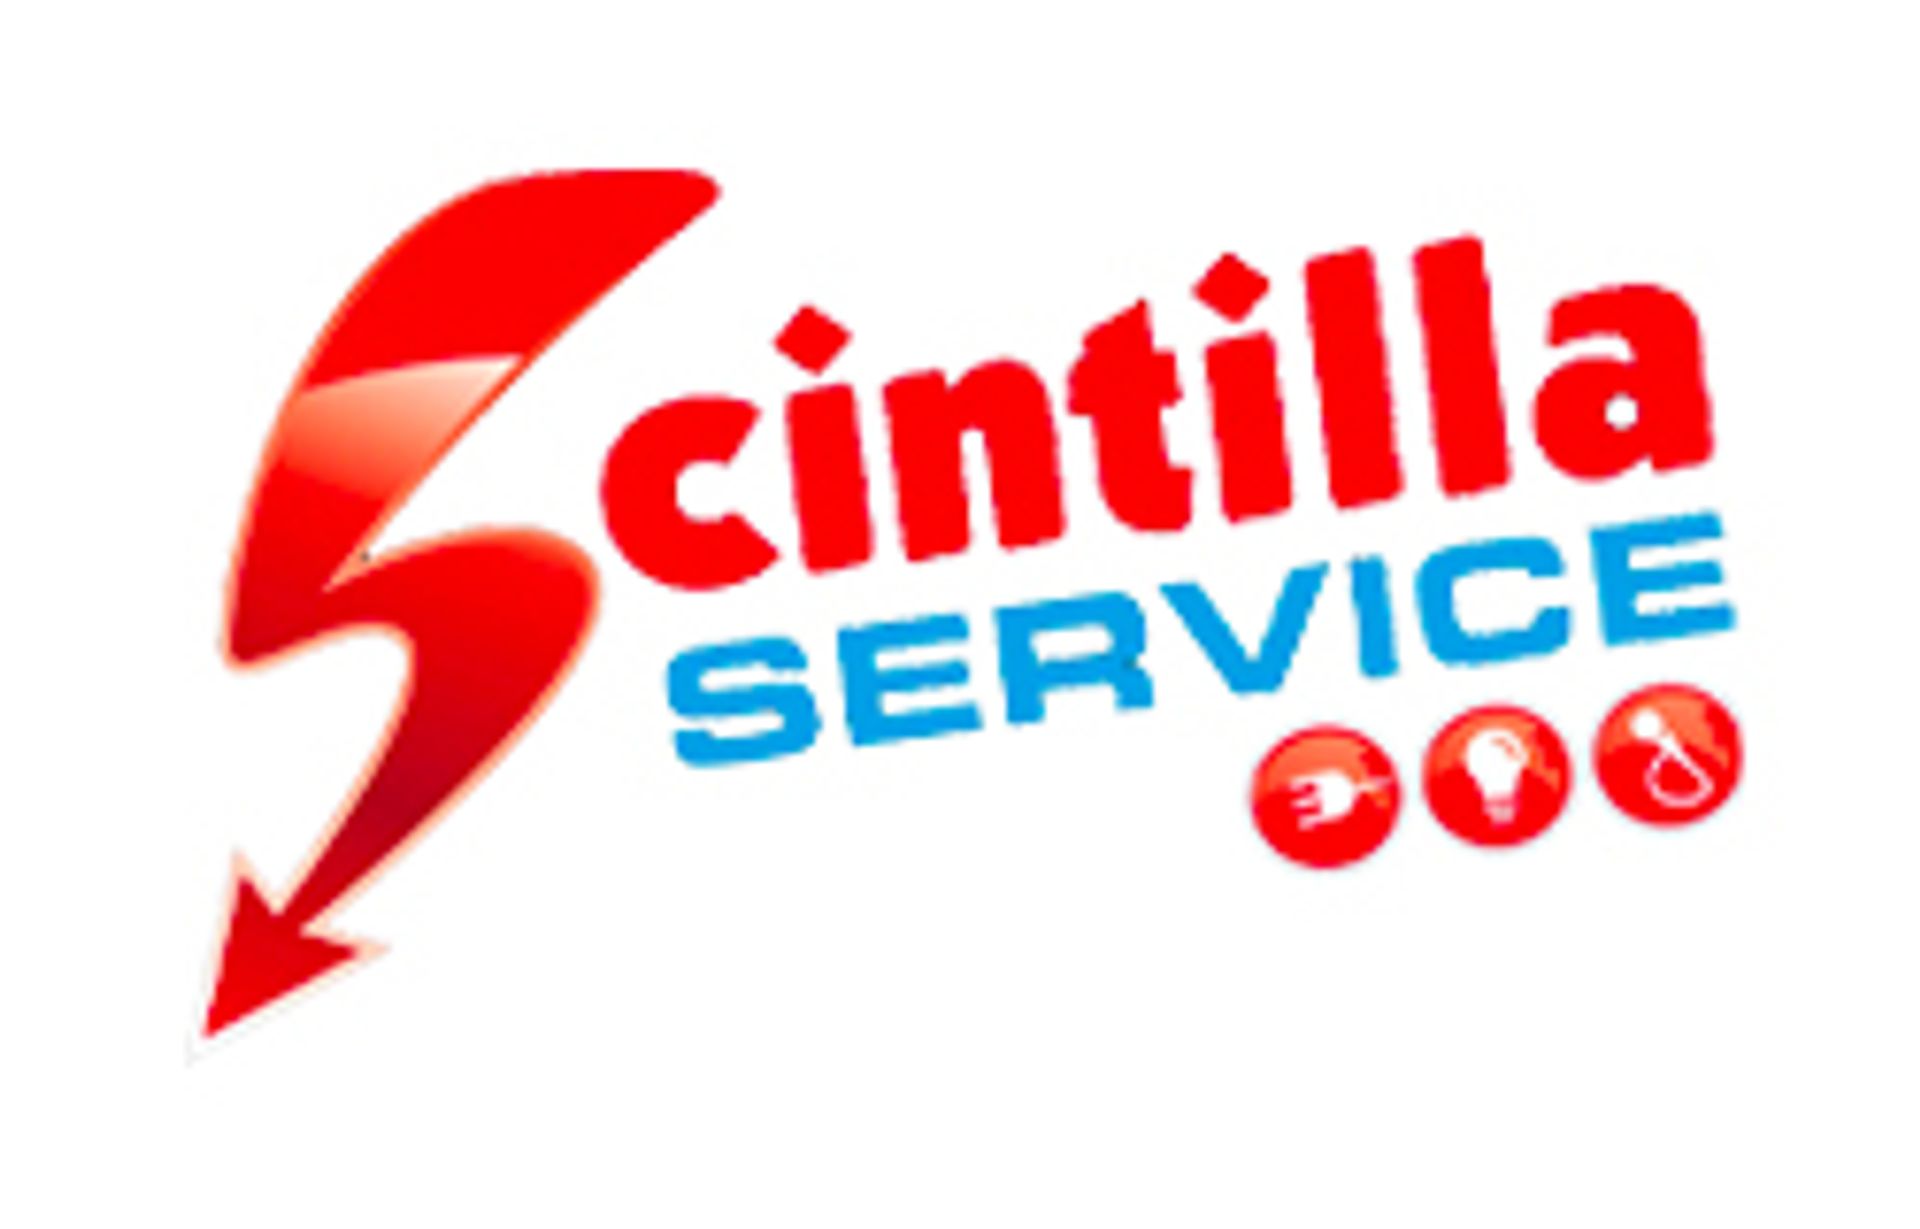 Scintilla Service